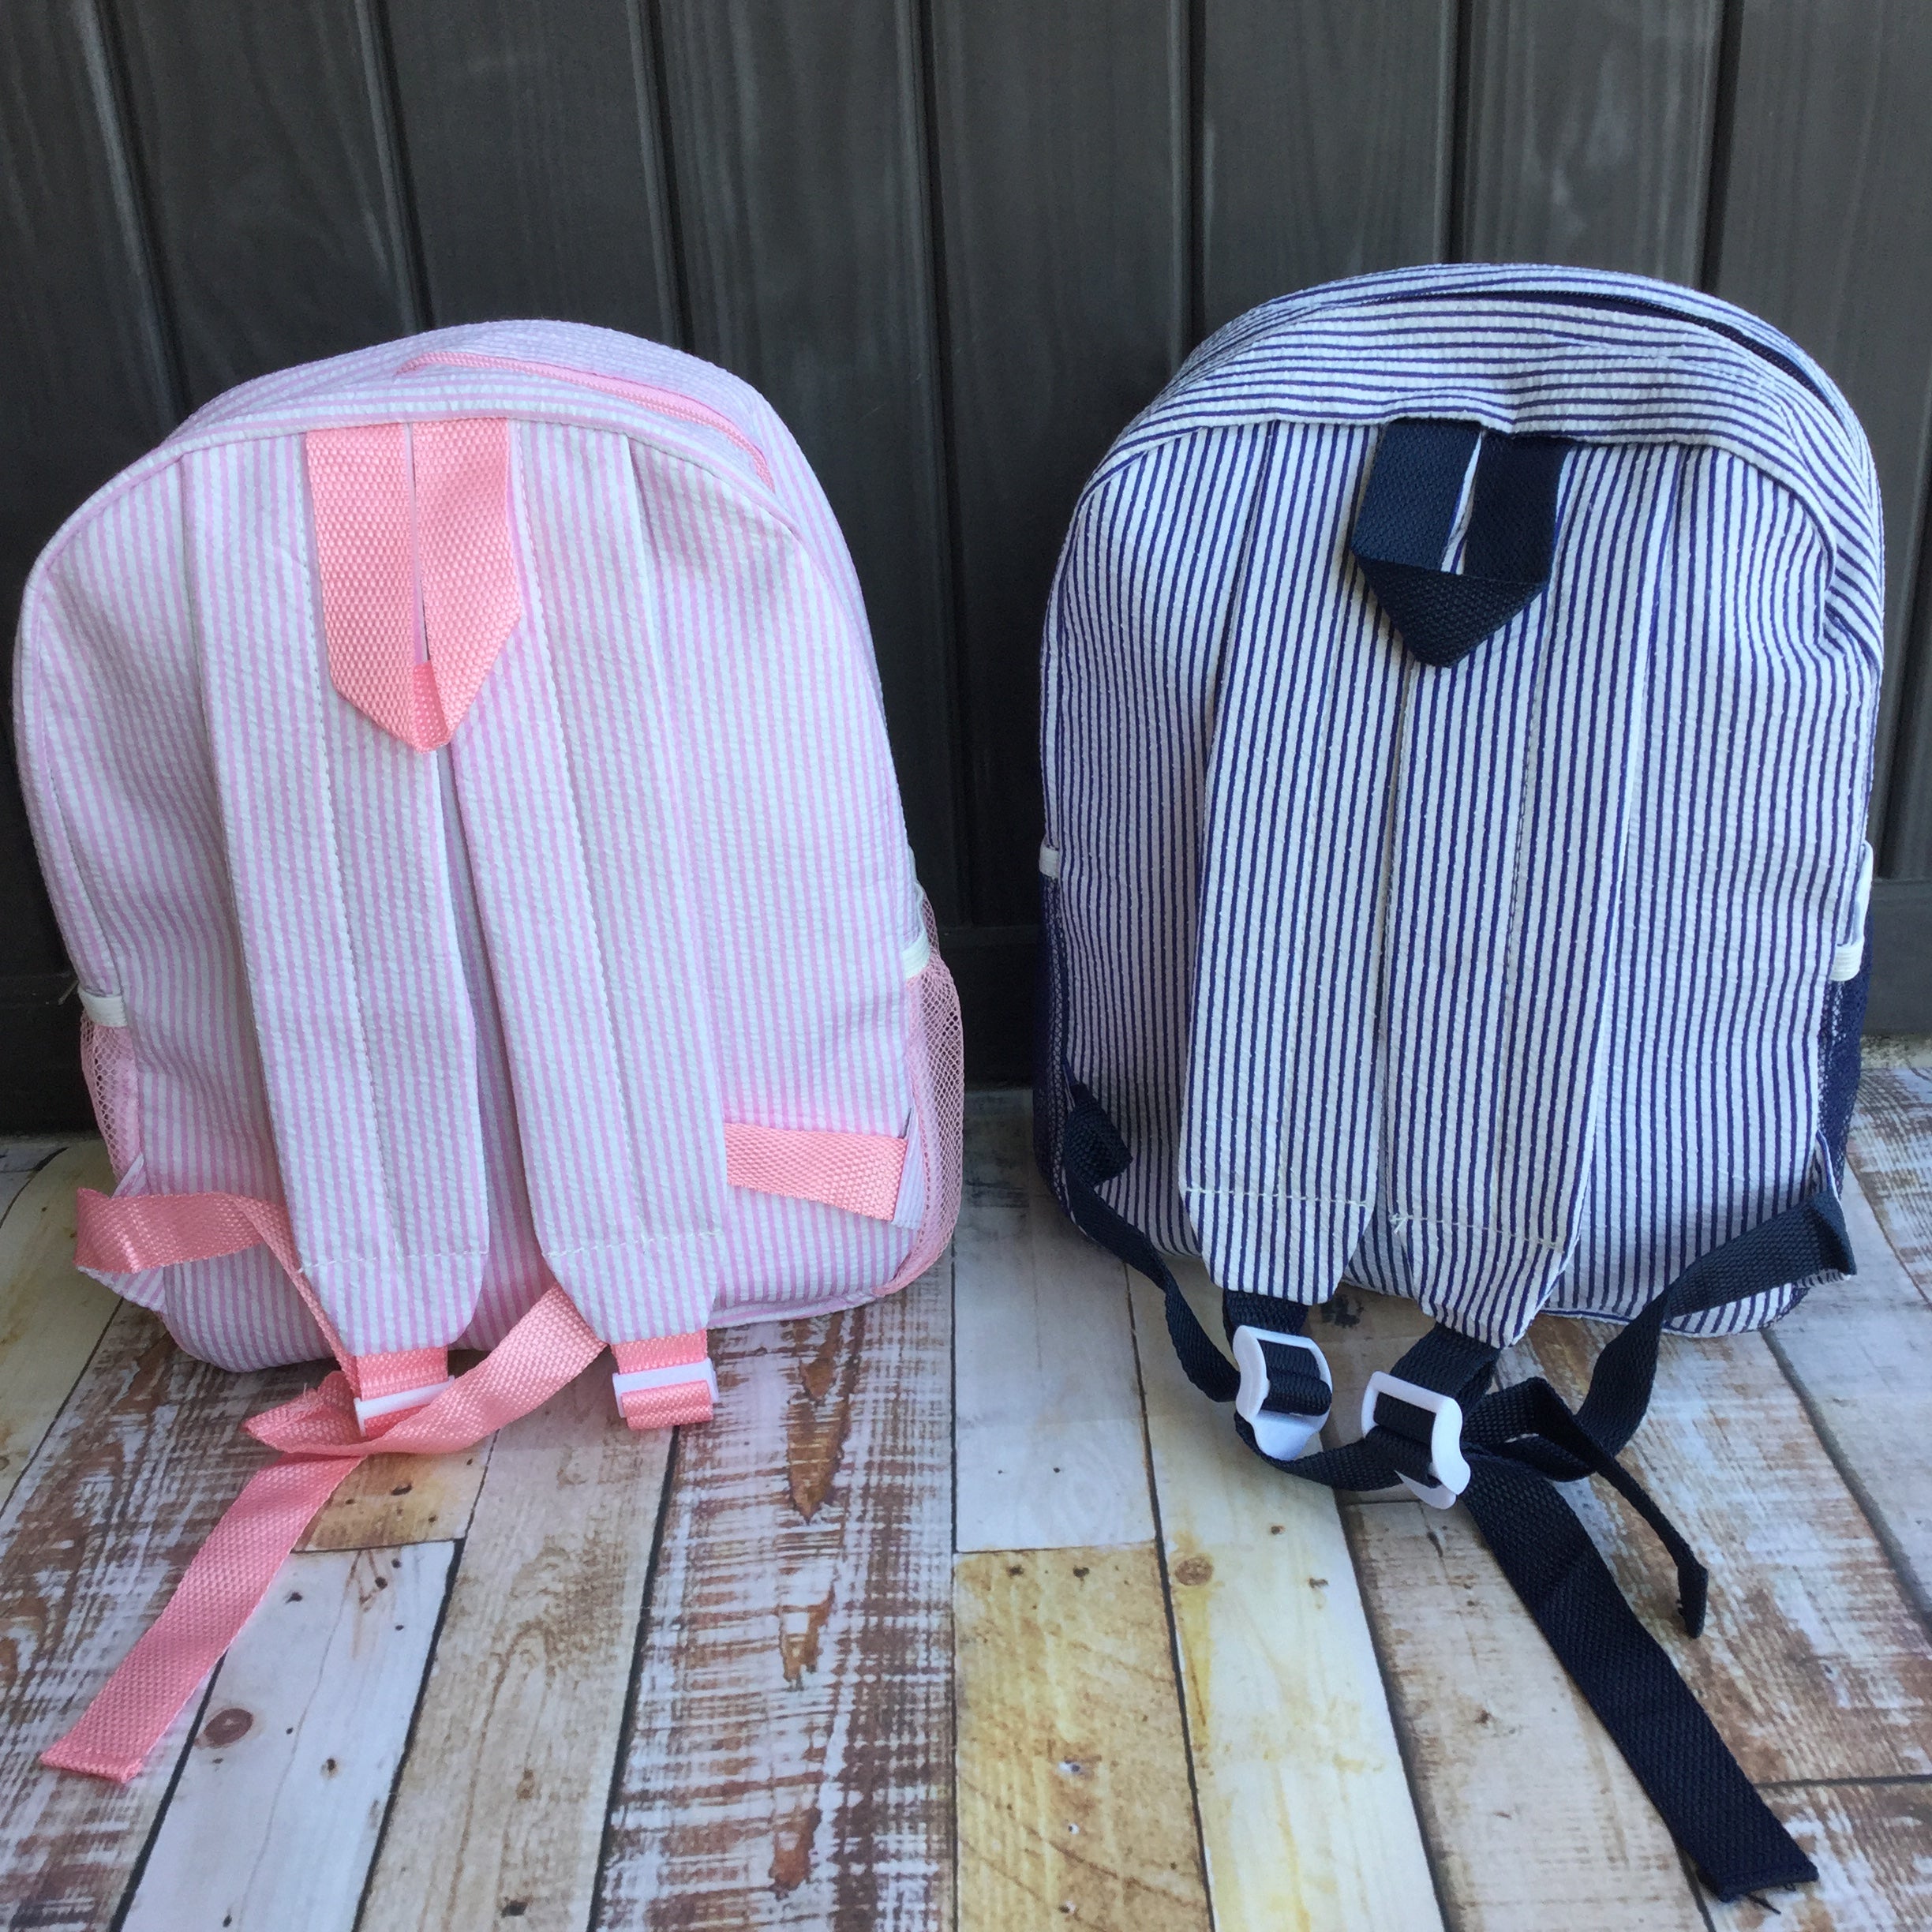 Backpack NEW STYLES-Toddler Size - Little Blanks, LLC